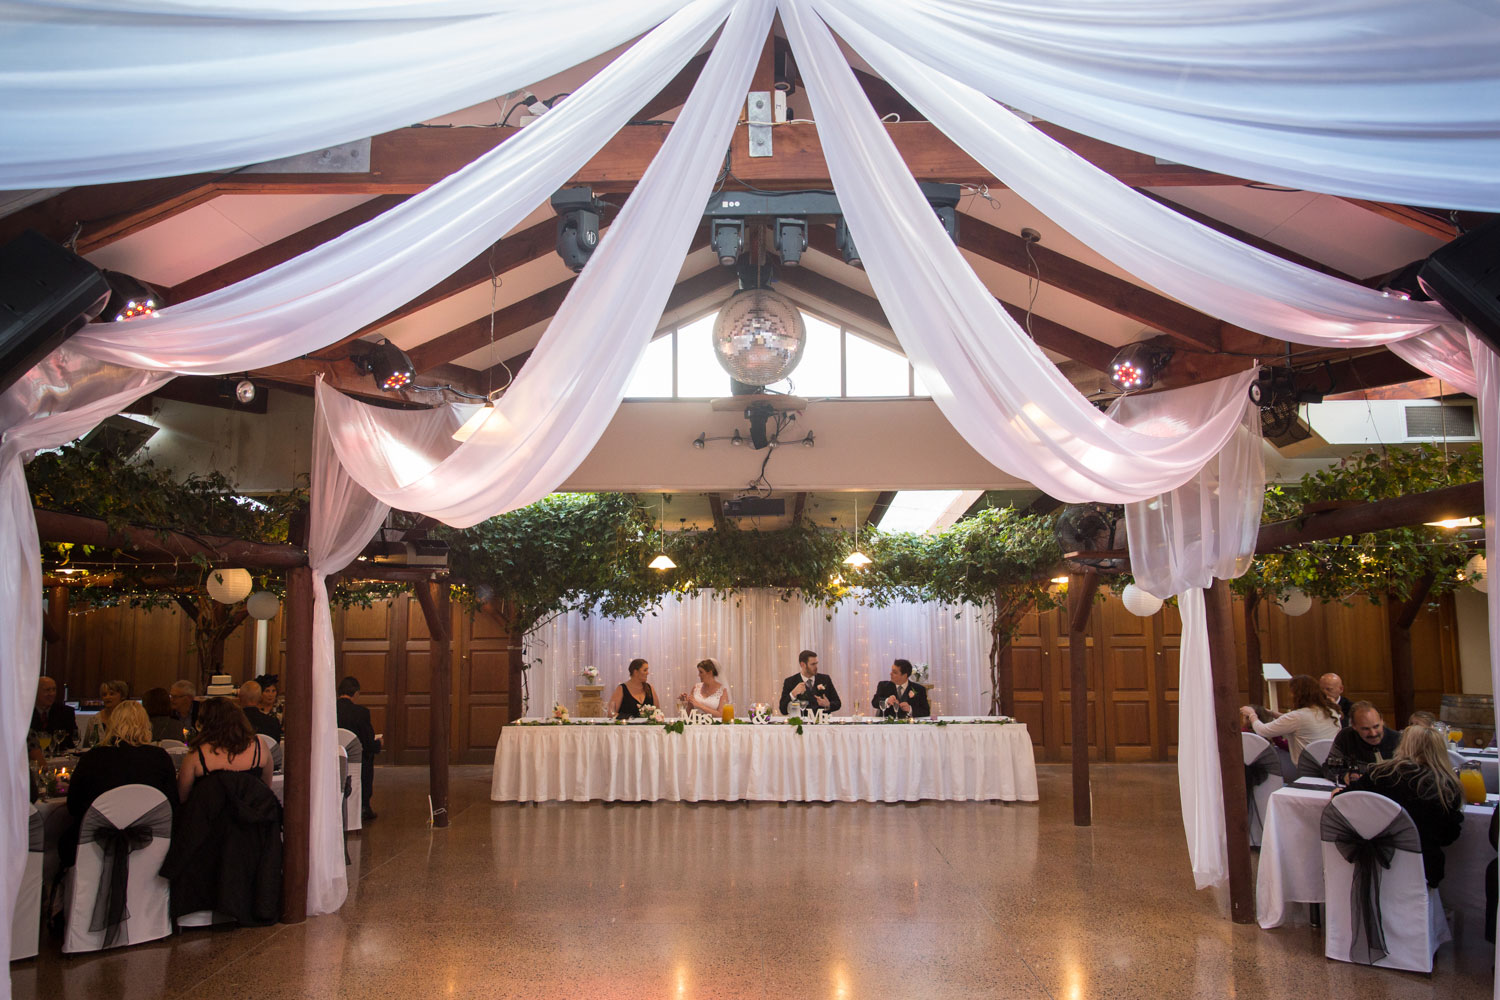 markovina wedding reception venue